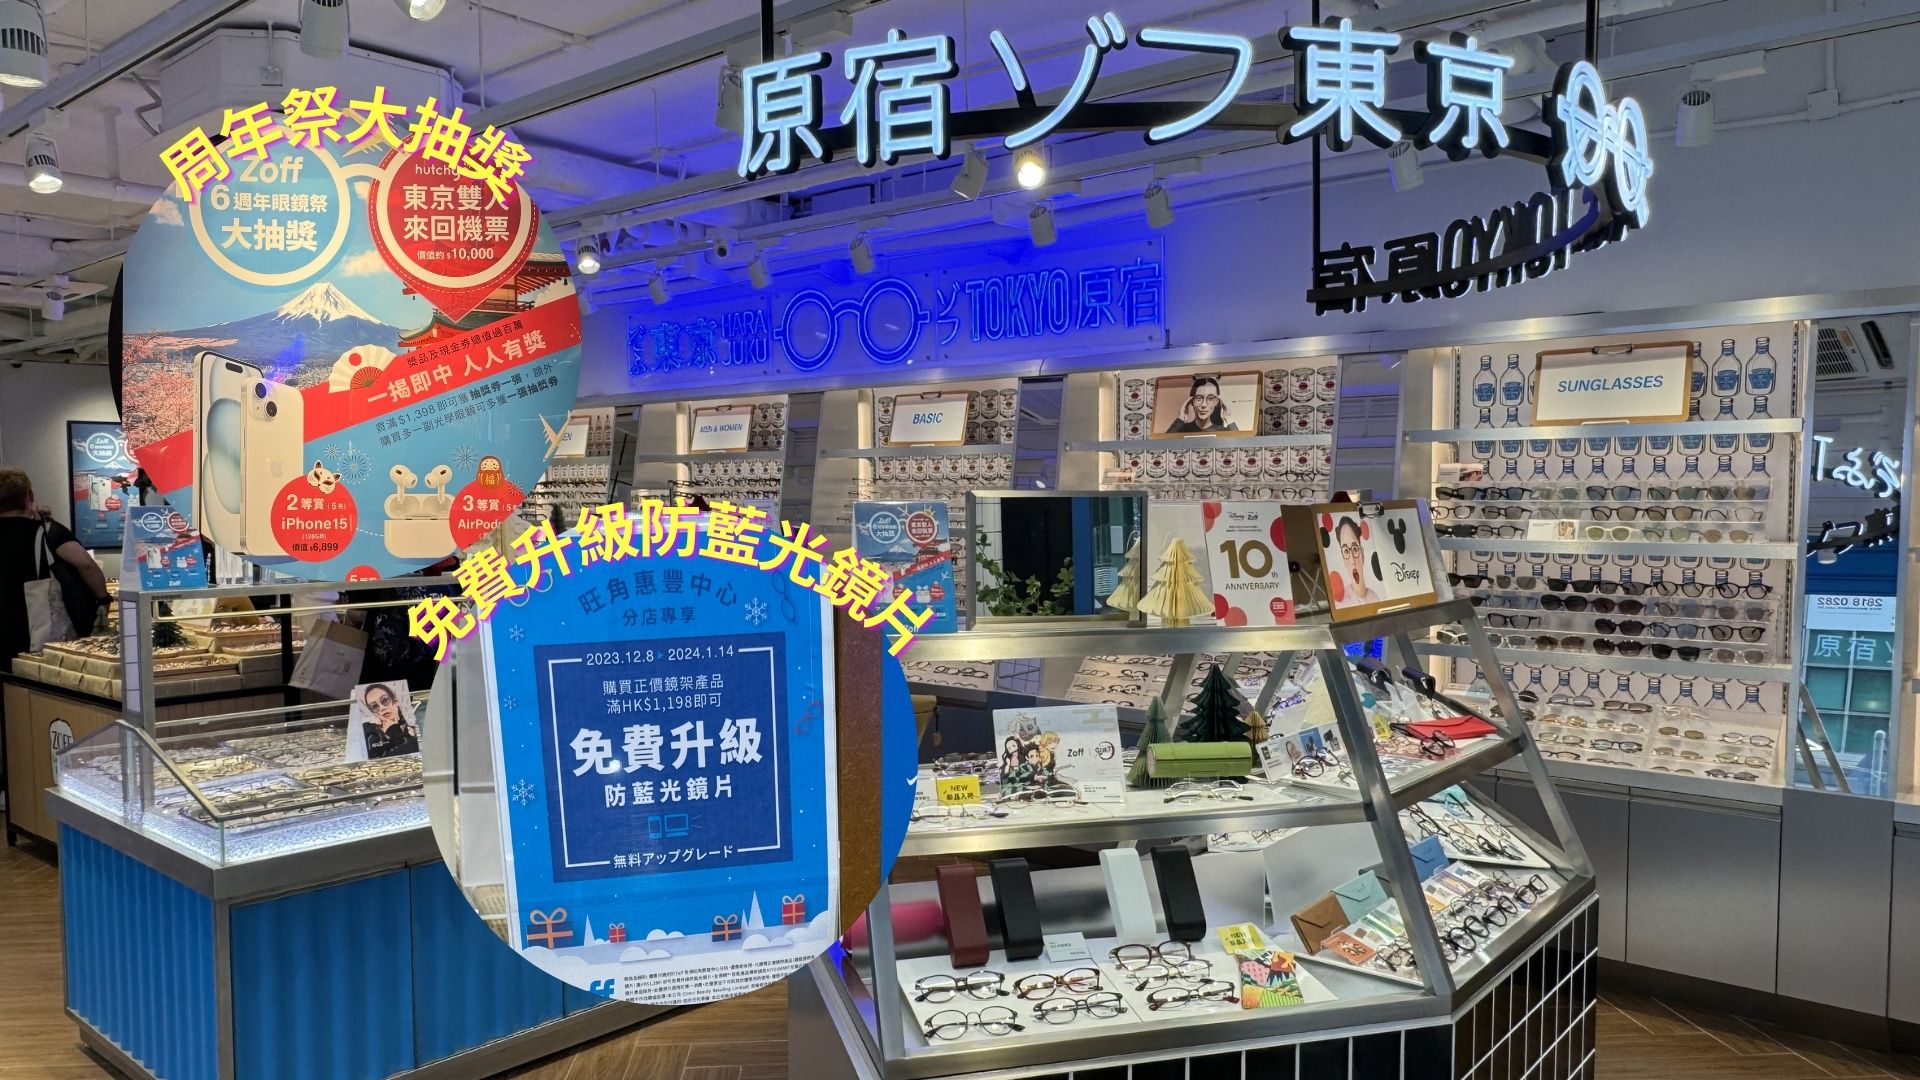 【購物】日本眼鏡品牌登陸旺角 抽獎贏取東京機票